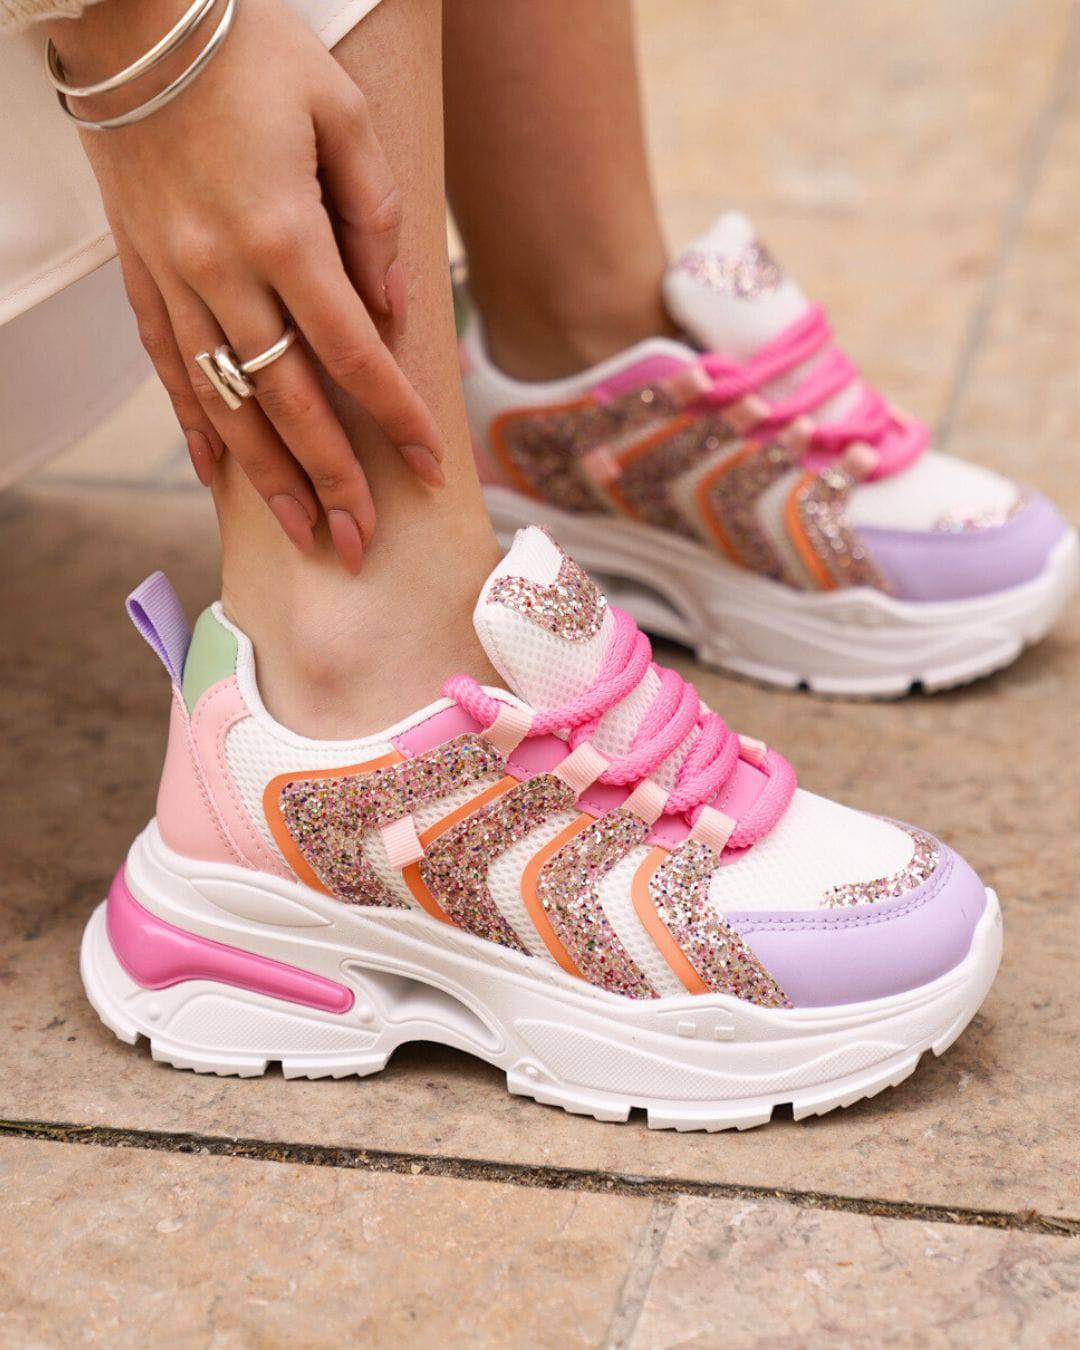 Damen-Sneaker in mehrfarbig mit dicker Sohle und Schnürung - Alisha - Casualmode.de